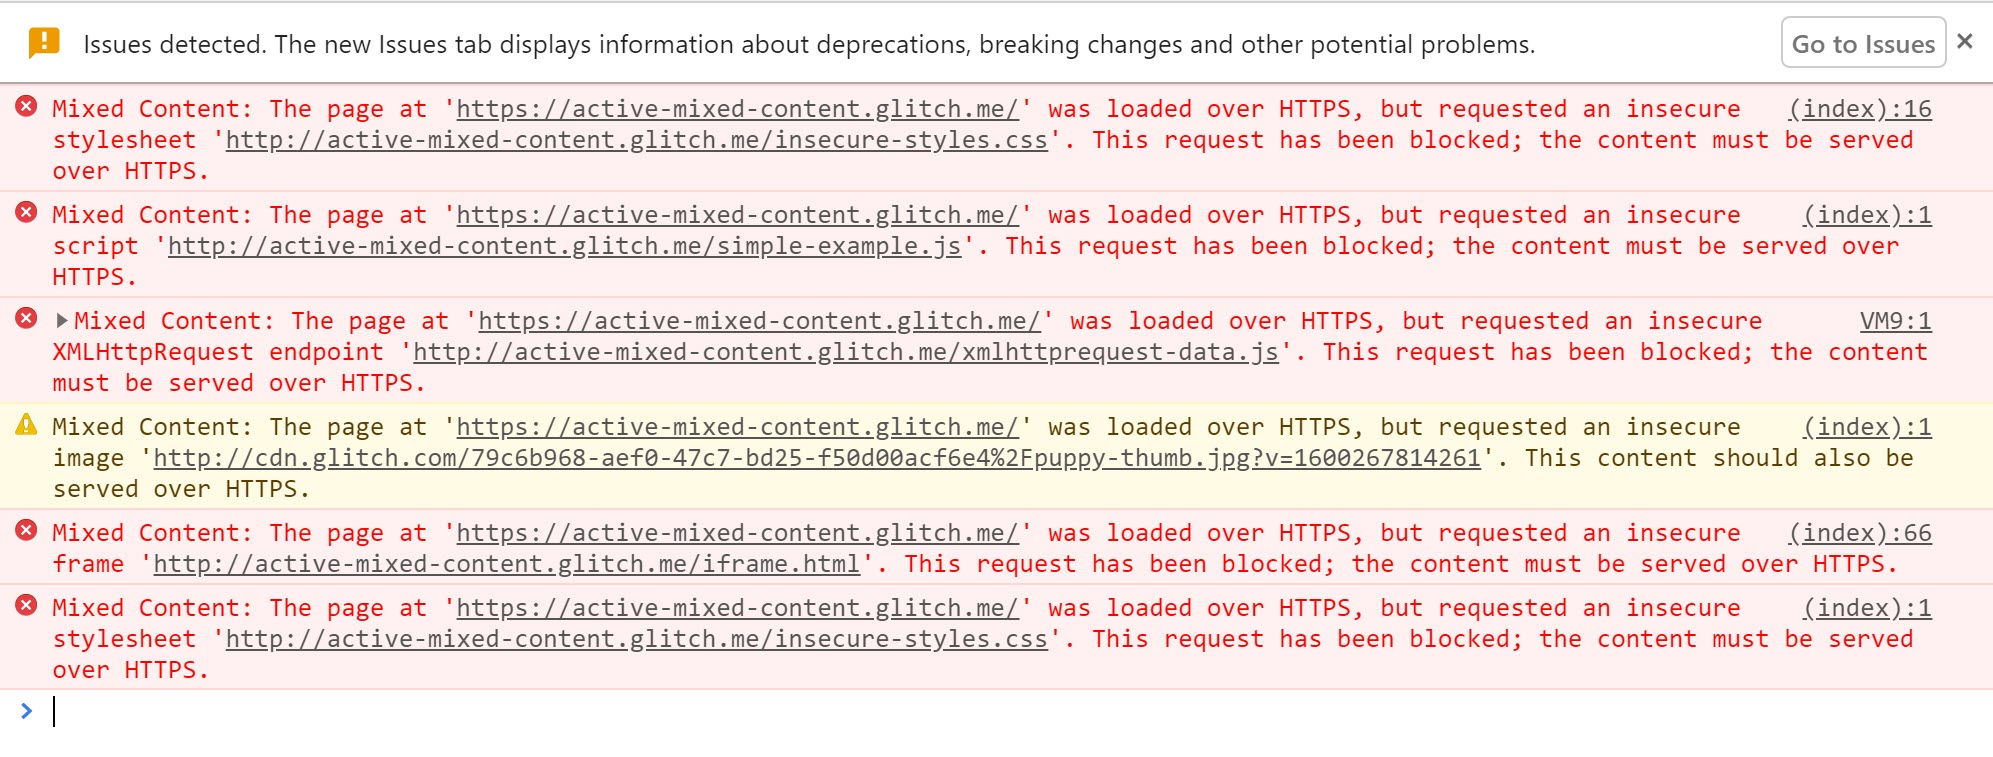 Chrome 開發人員工具顯示使用中複合型內容遭封鎖時顯示的警告